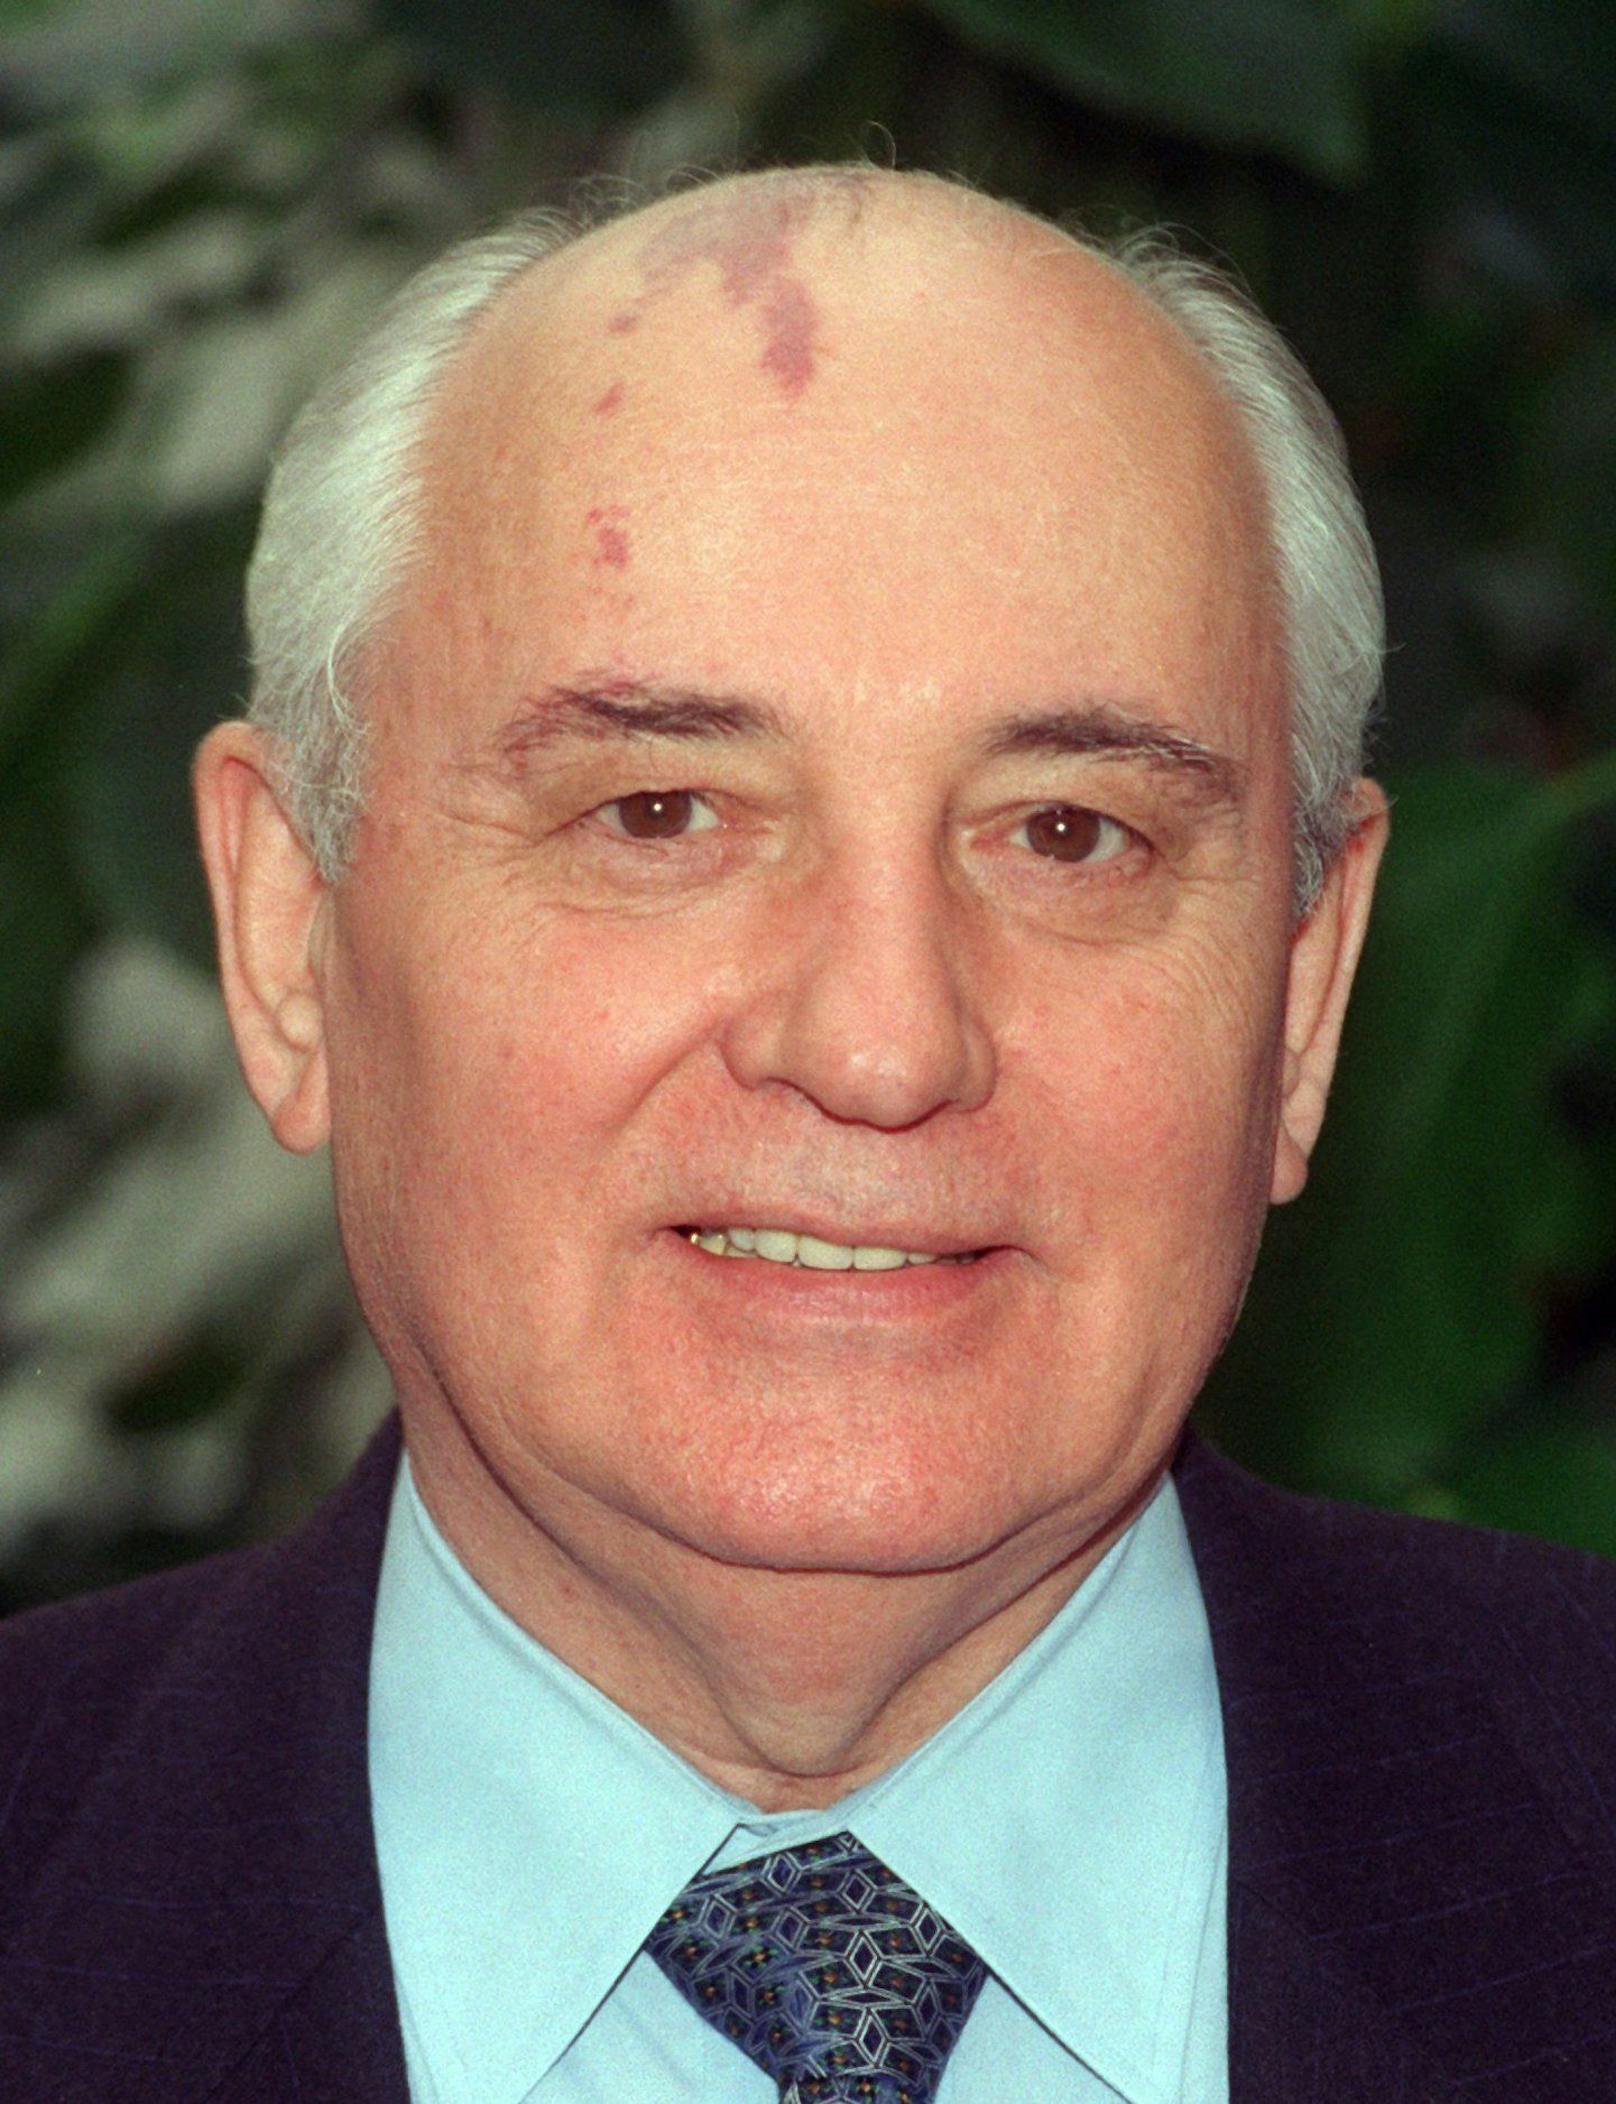 Michail Gorbatschow, ehemaliger Staatspräsident der früheren Sowjetunion, auf einem Archivbild aus dem Jahr 1996.